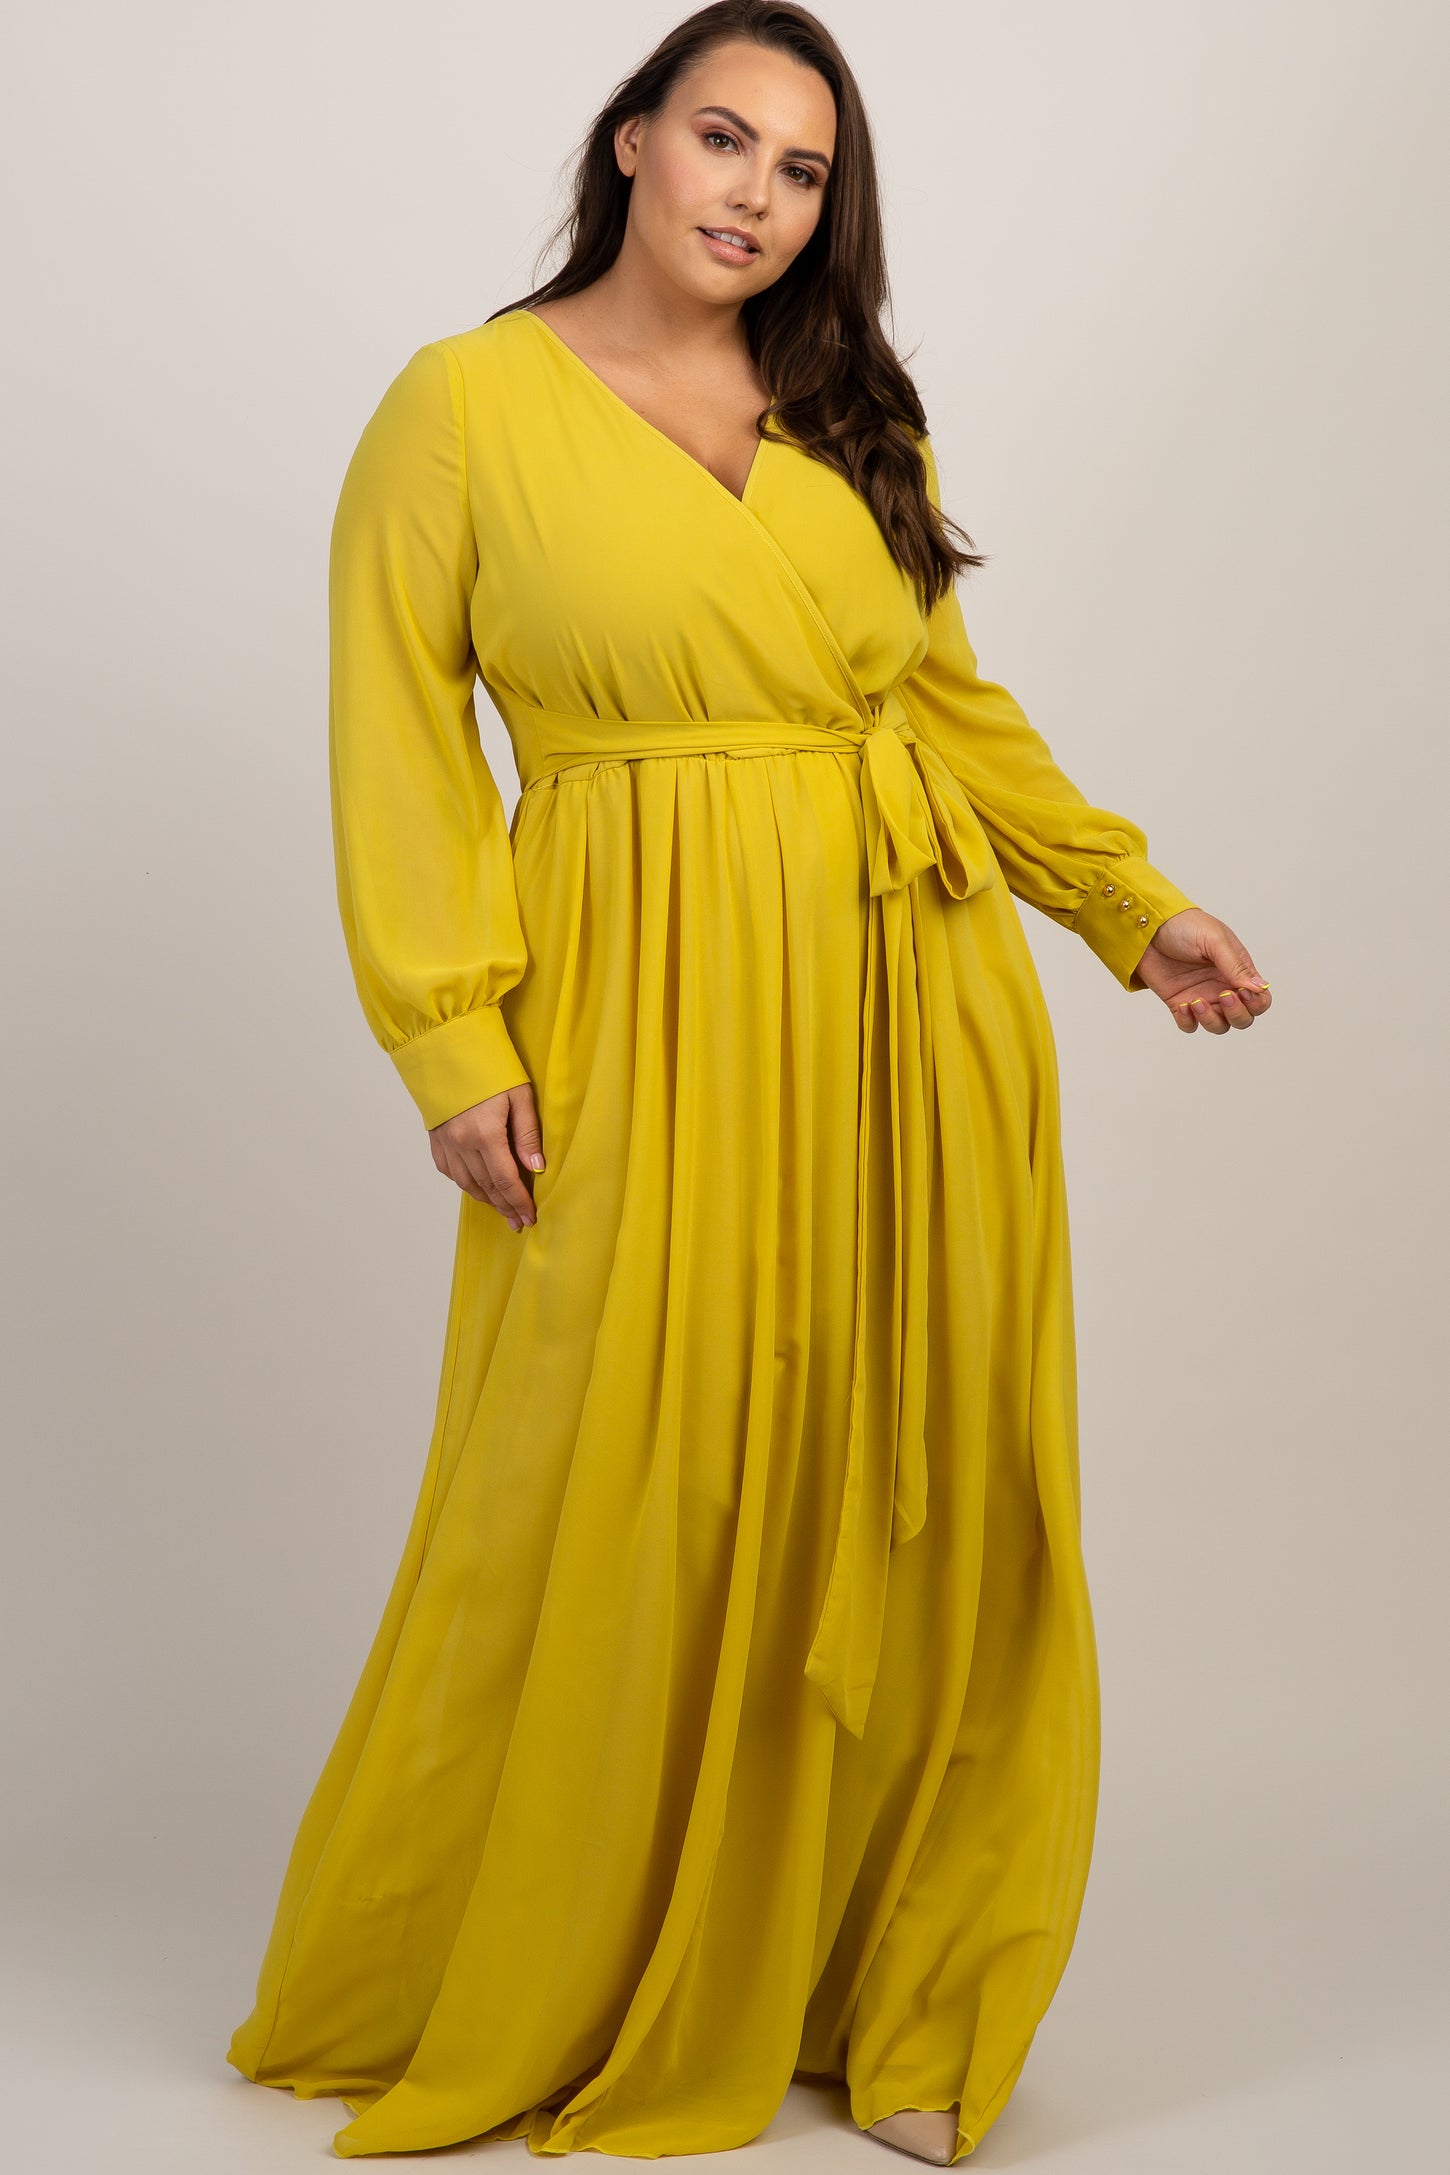 Yellow Chiffon Long Sleeve Plus Maternity Maxi Dress